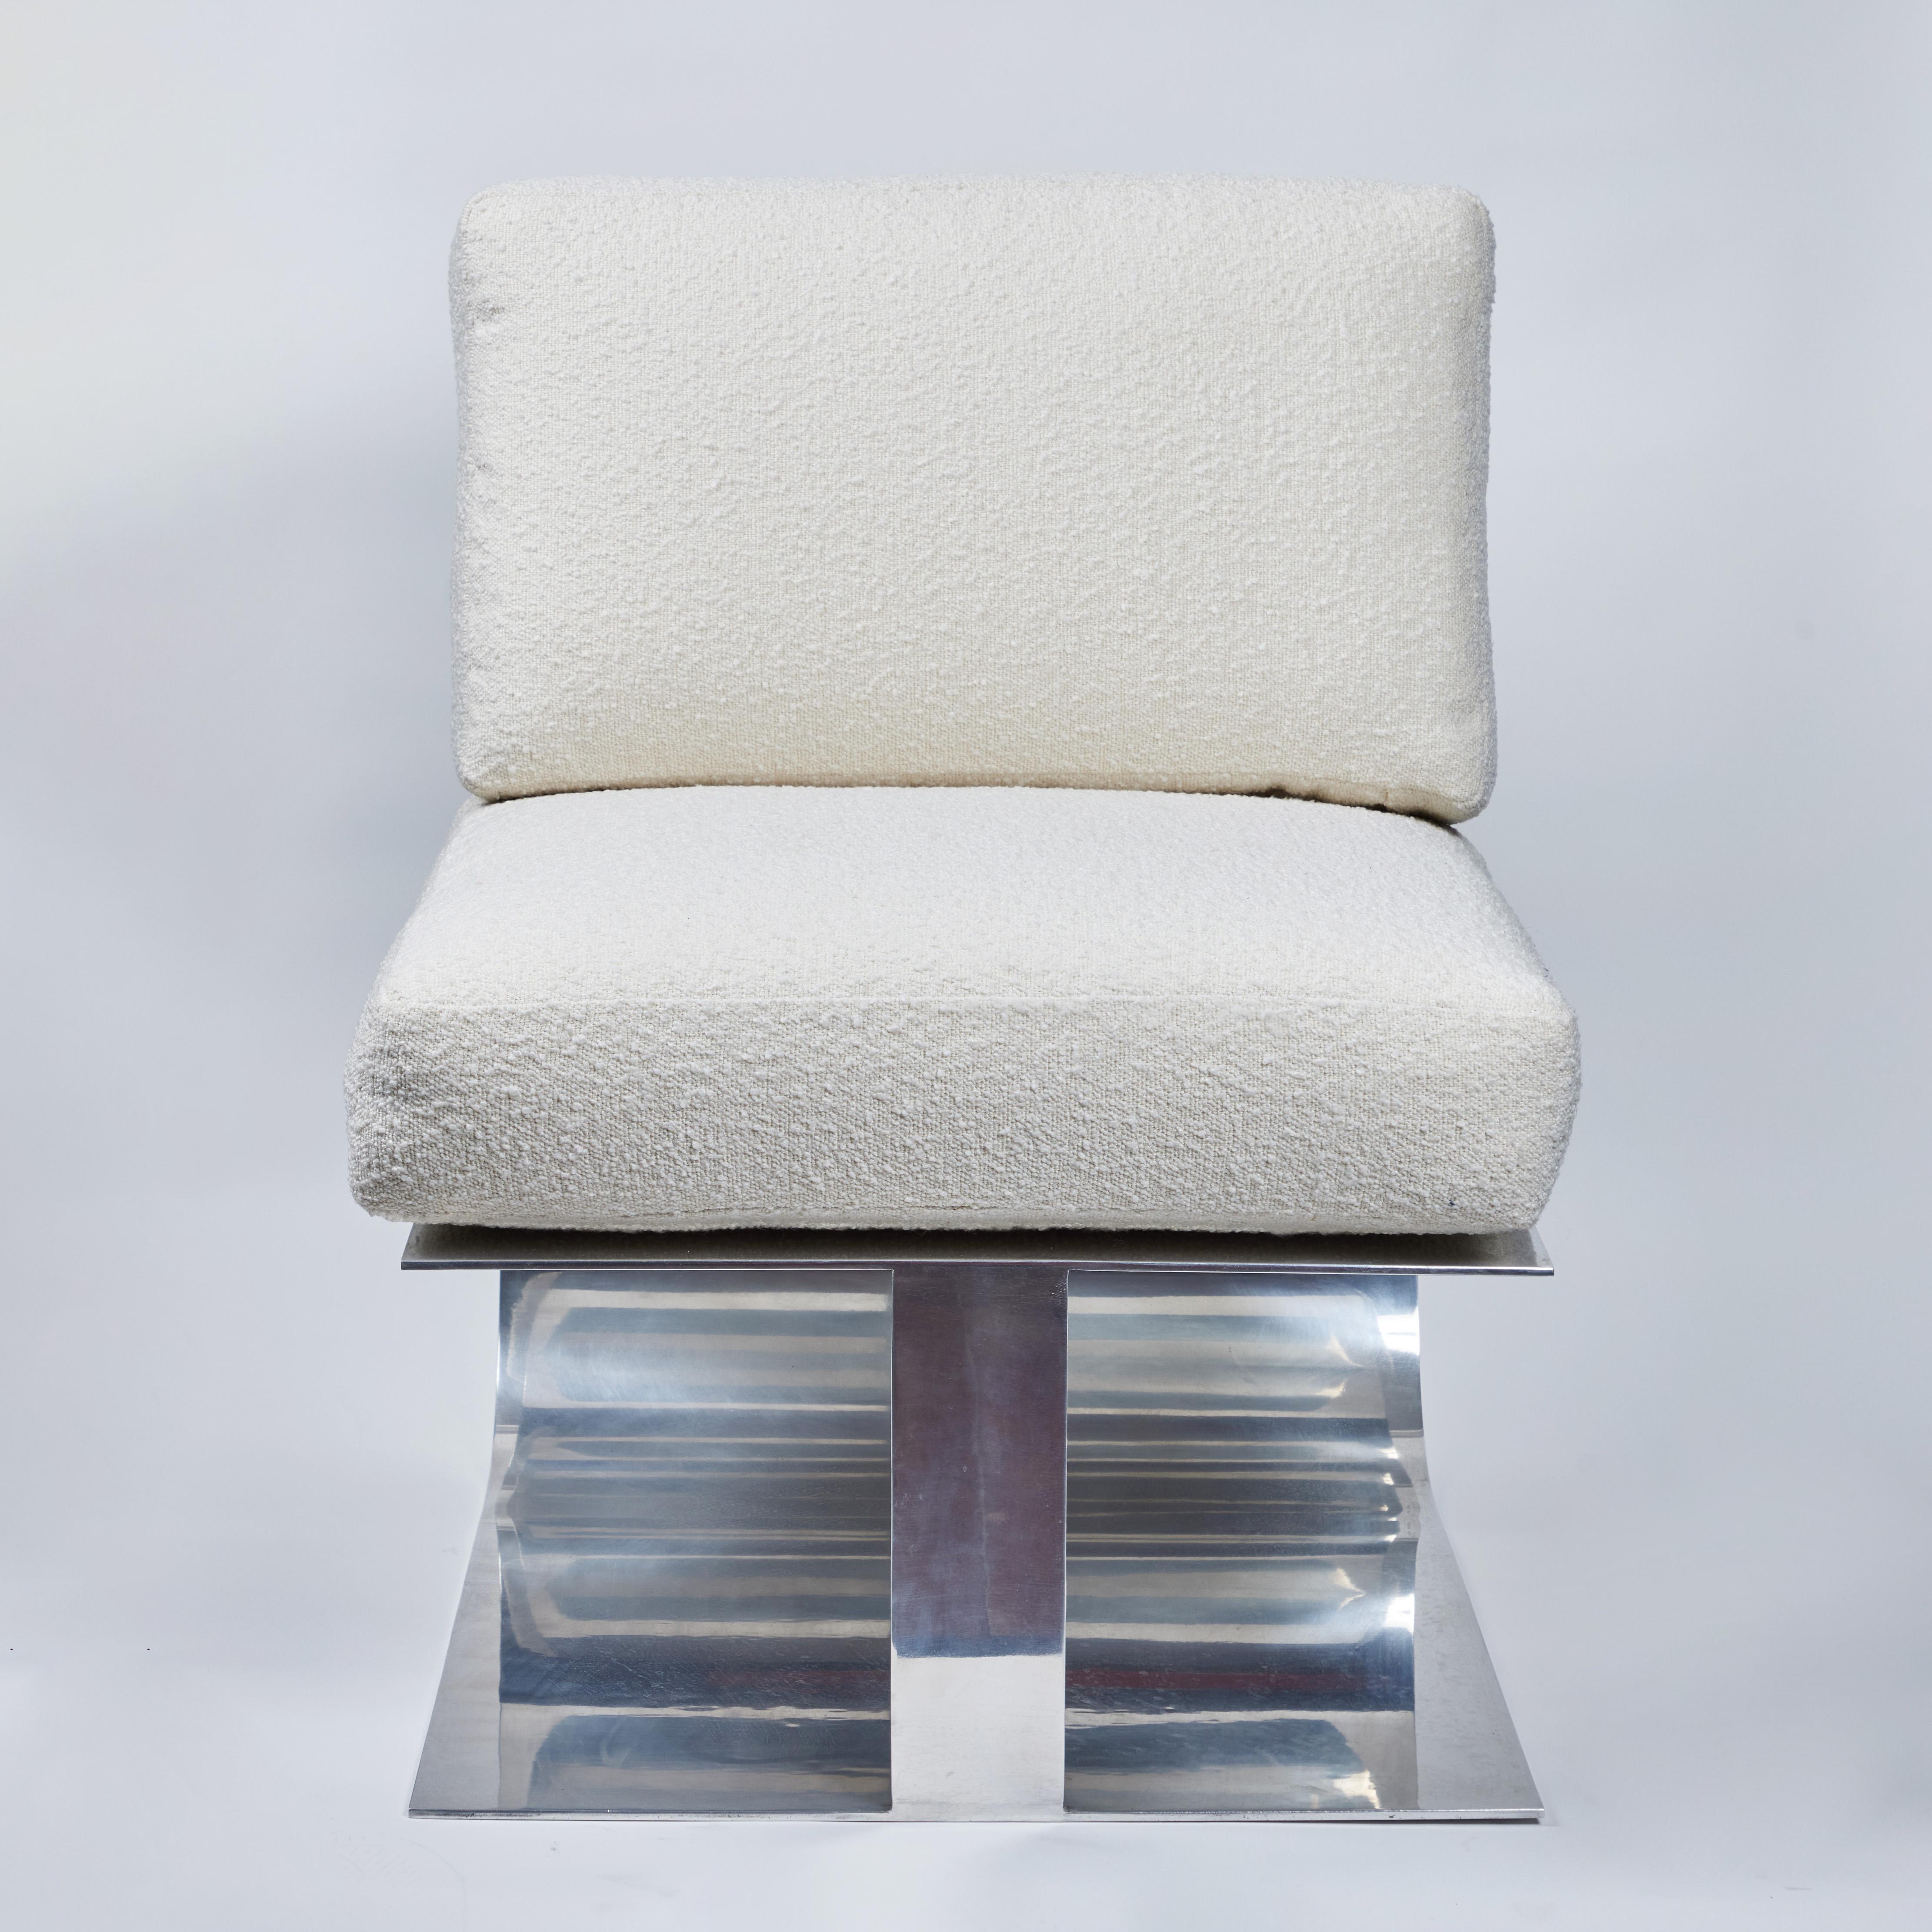 Der Yves Lounge Chair aus der Modern Envy Collection exklusiv bei On Madison. Stuhl aus gerolltem und verspiegeltem Aluminium mit maßgeschneiderten Polstern. Abgebildet in weißem Bouclé. Der Stoff ist C.O.M. Bitte rechnen Sie mit 8-10 Wochen